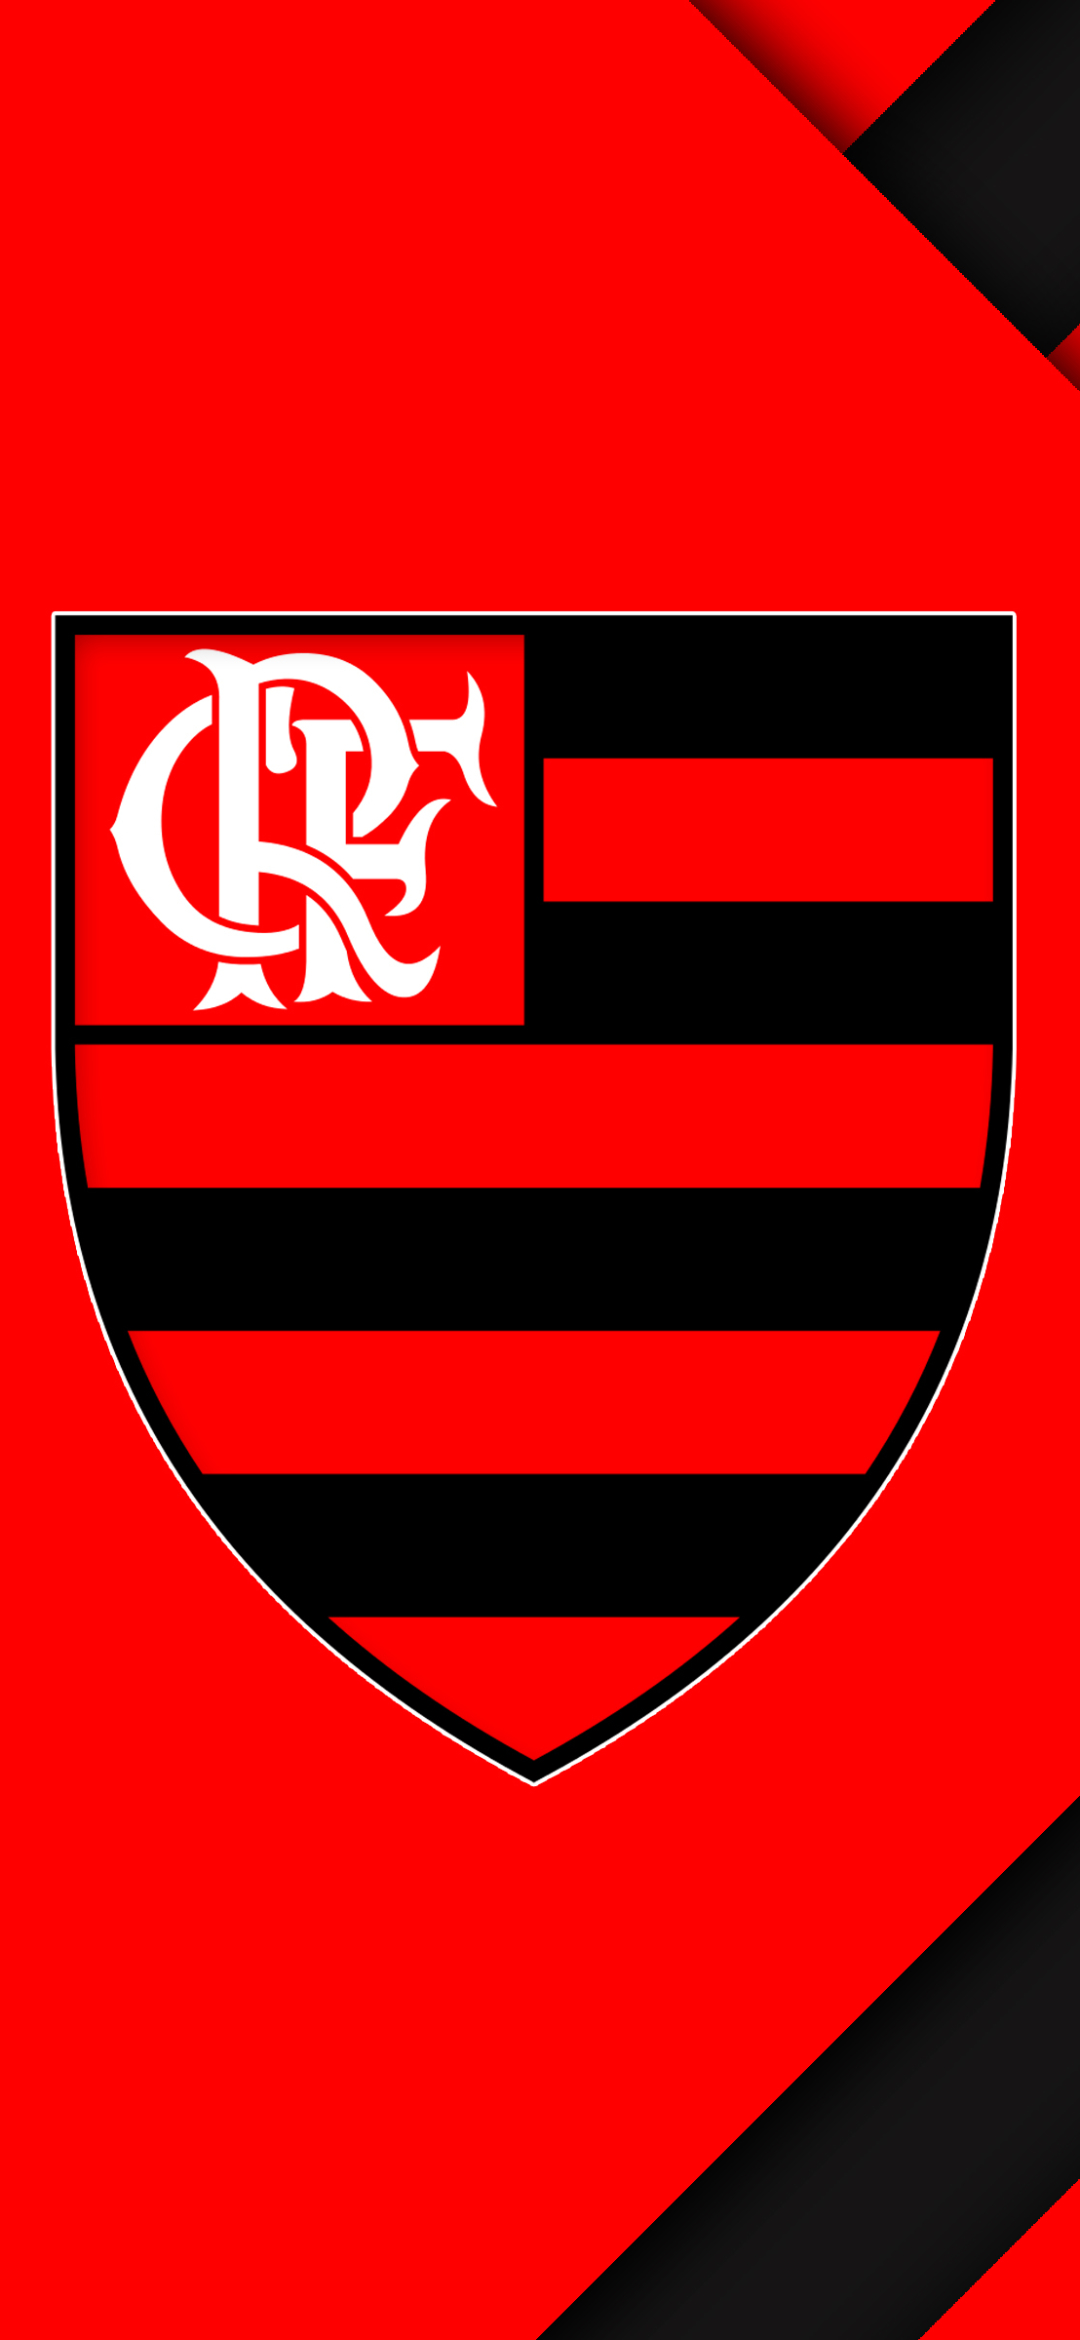 clube de regatas do flamengo, sports, soccer, logo